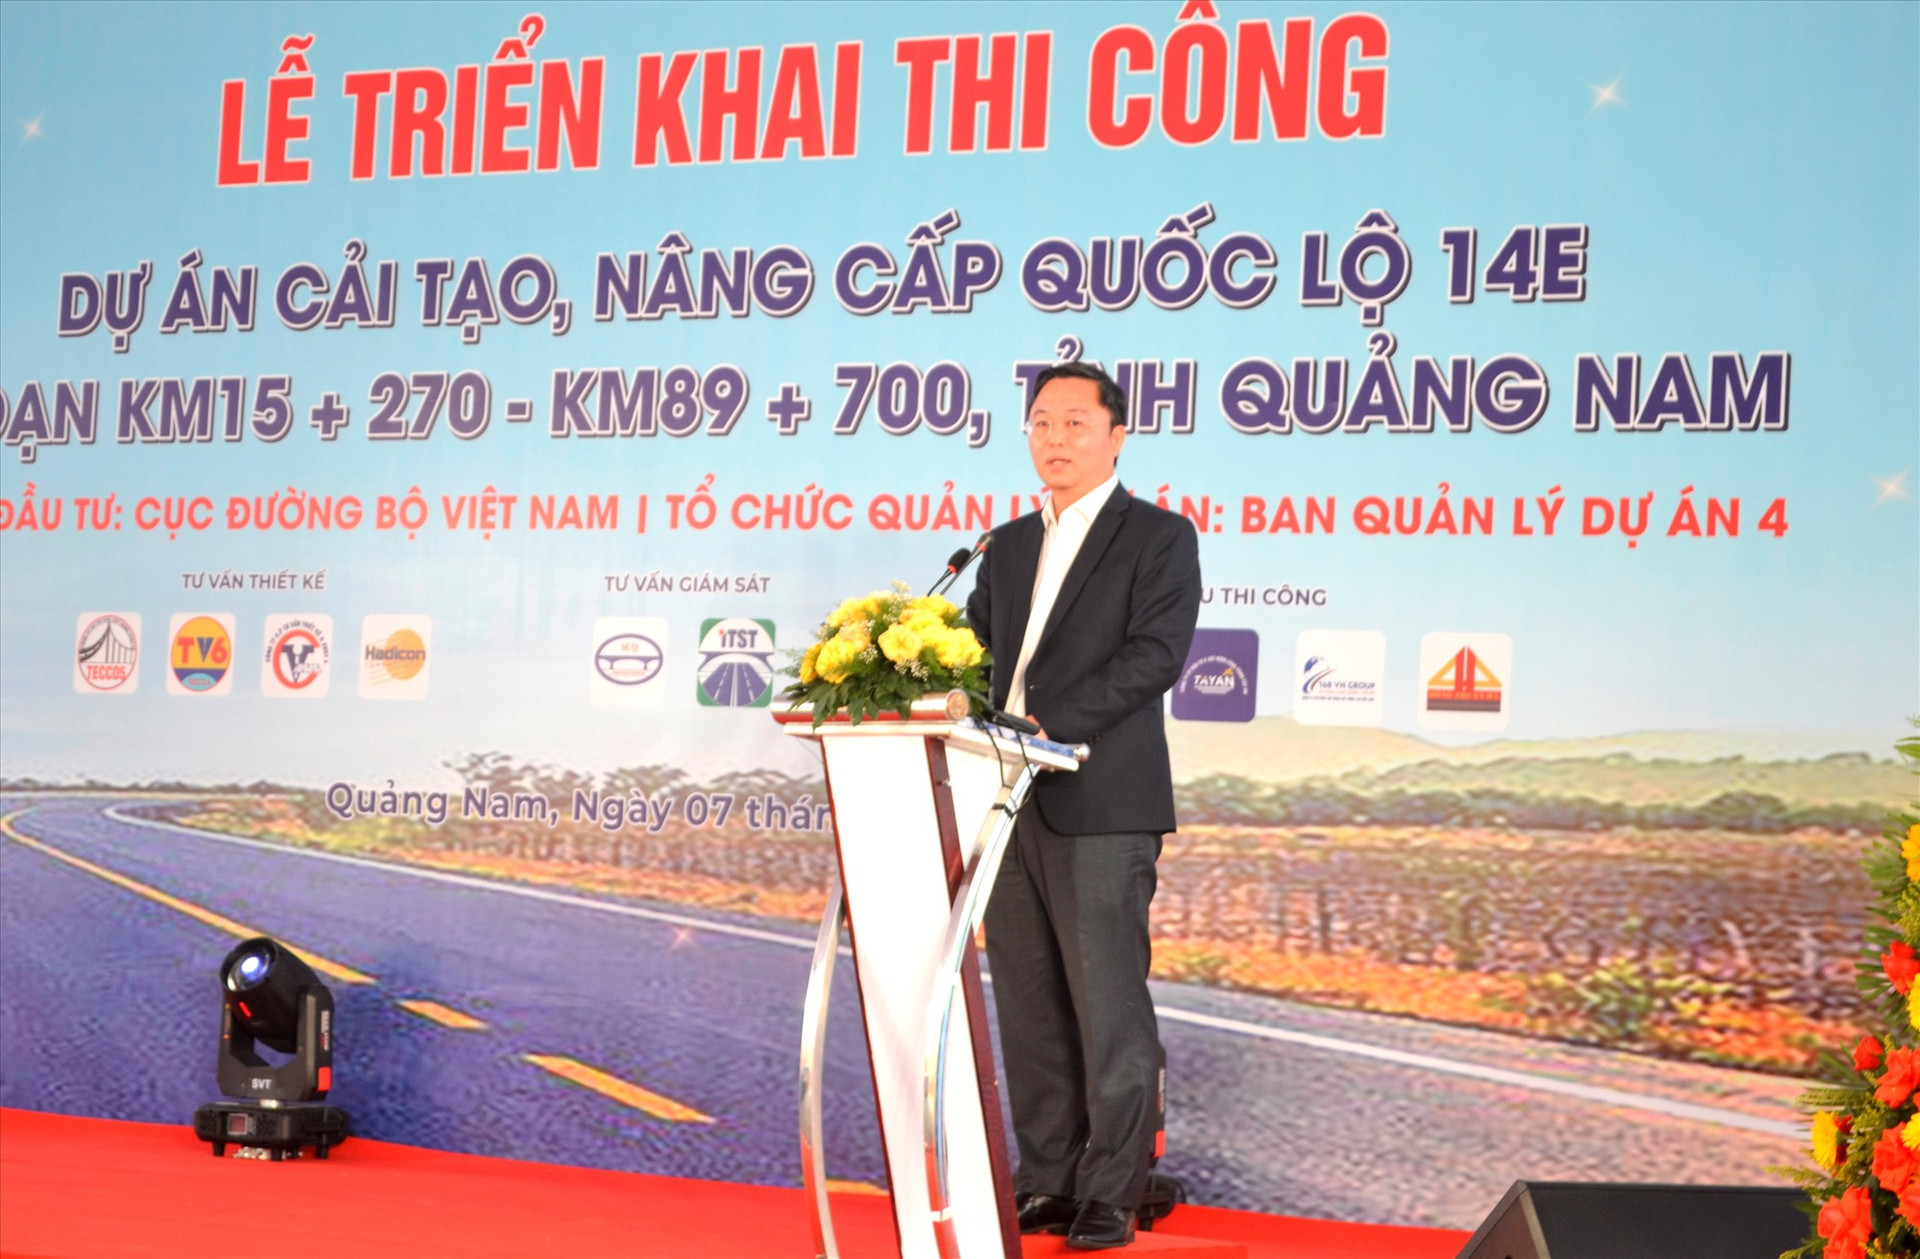 Chủ tịch UBND tỉnh Lê Trí Thanh khẳng định tầm quan trọng của dự án cải tạo, nâng cấp QL14E. Ảnh: CT